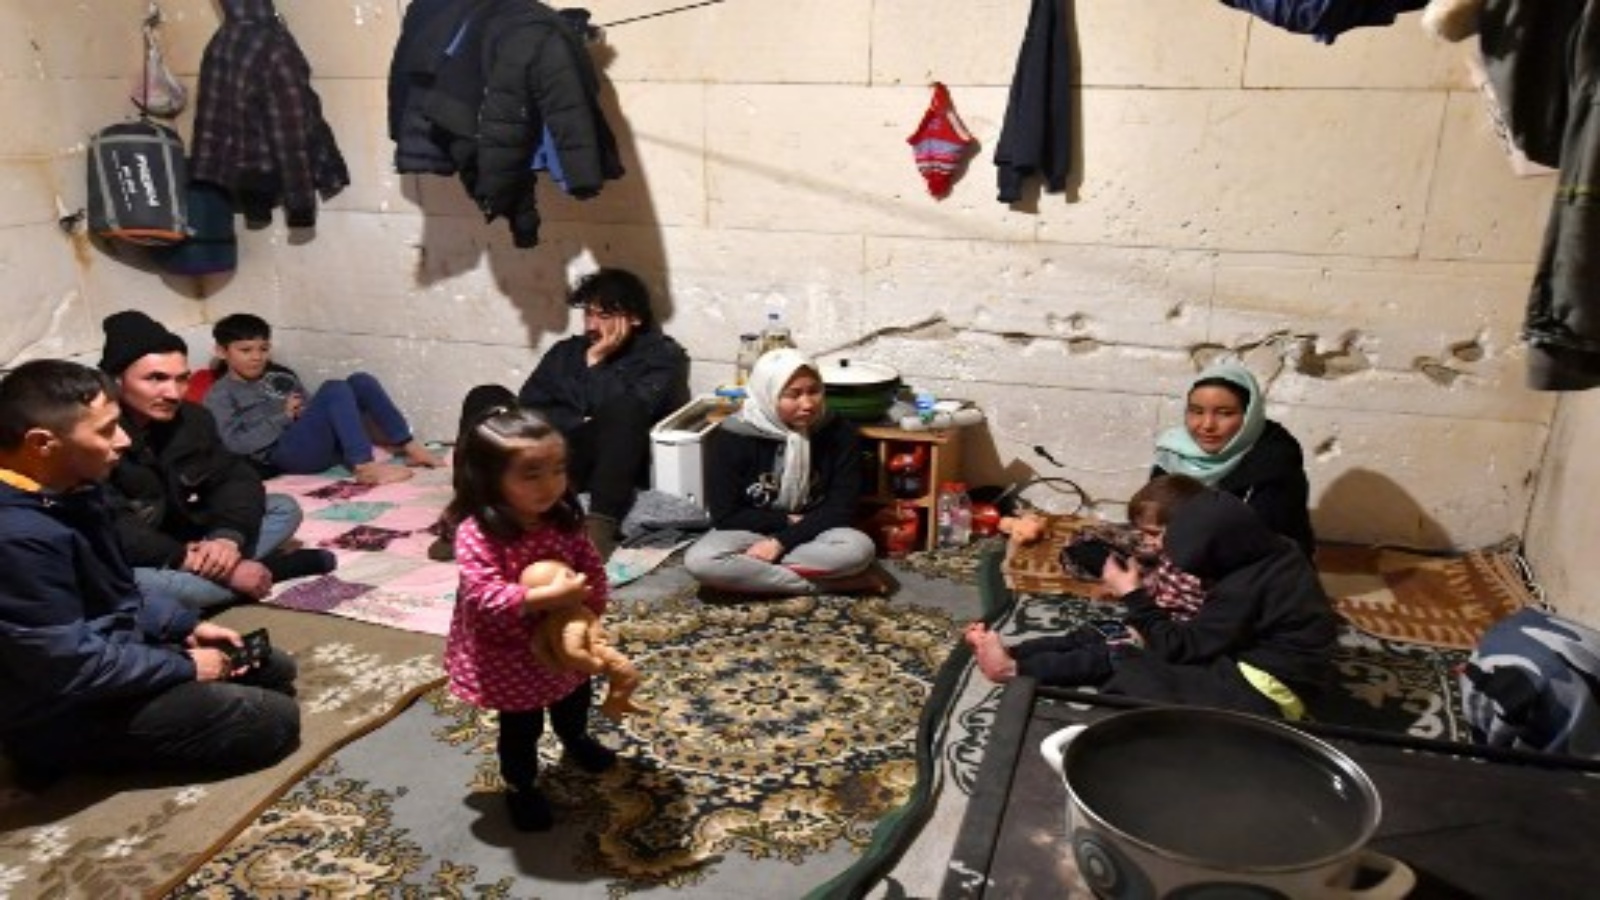 أفراد من ثلاث عائلات مهاجرة ، من أصل أفغاني ، يجتمعون في غرفة في منزل مهجور في 30 يناير 2021 على بعد مئات الأمتار من حدود البوسنة / كرواتيا في قرية بوسانسكا بوجنا الواقعة في شمال البوسنة